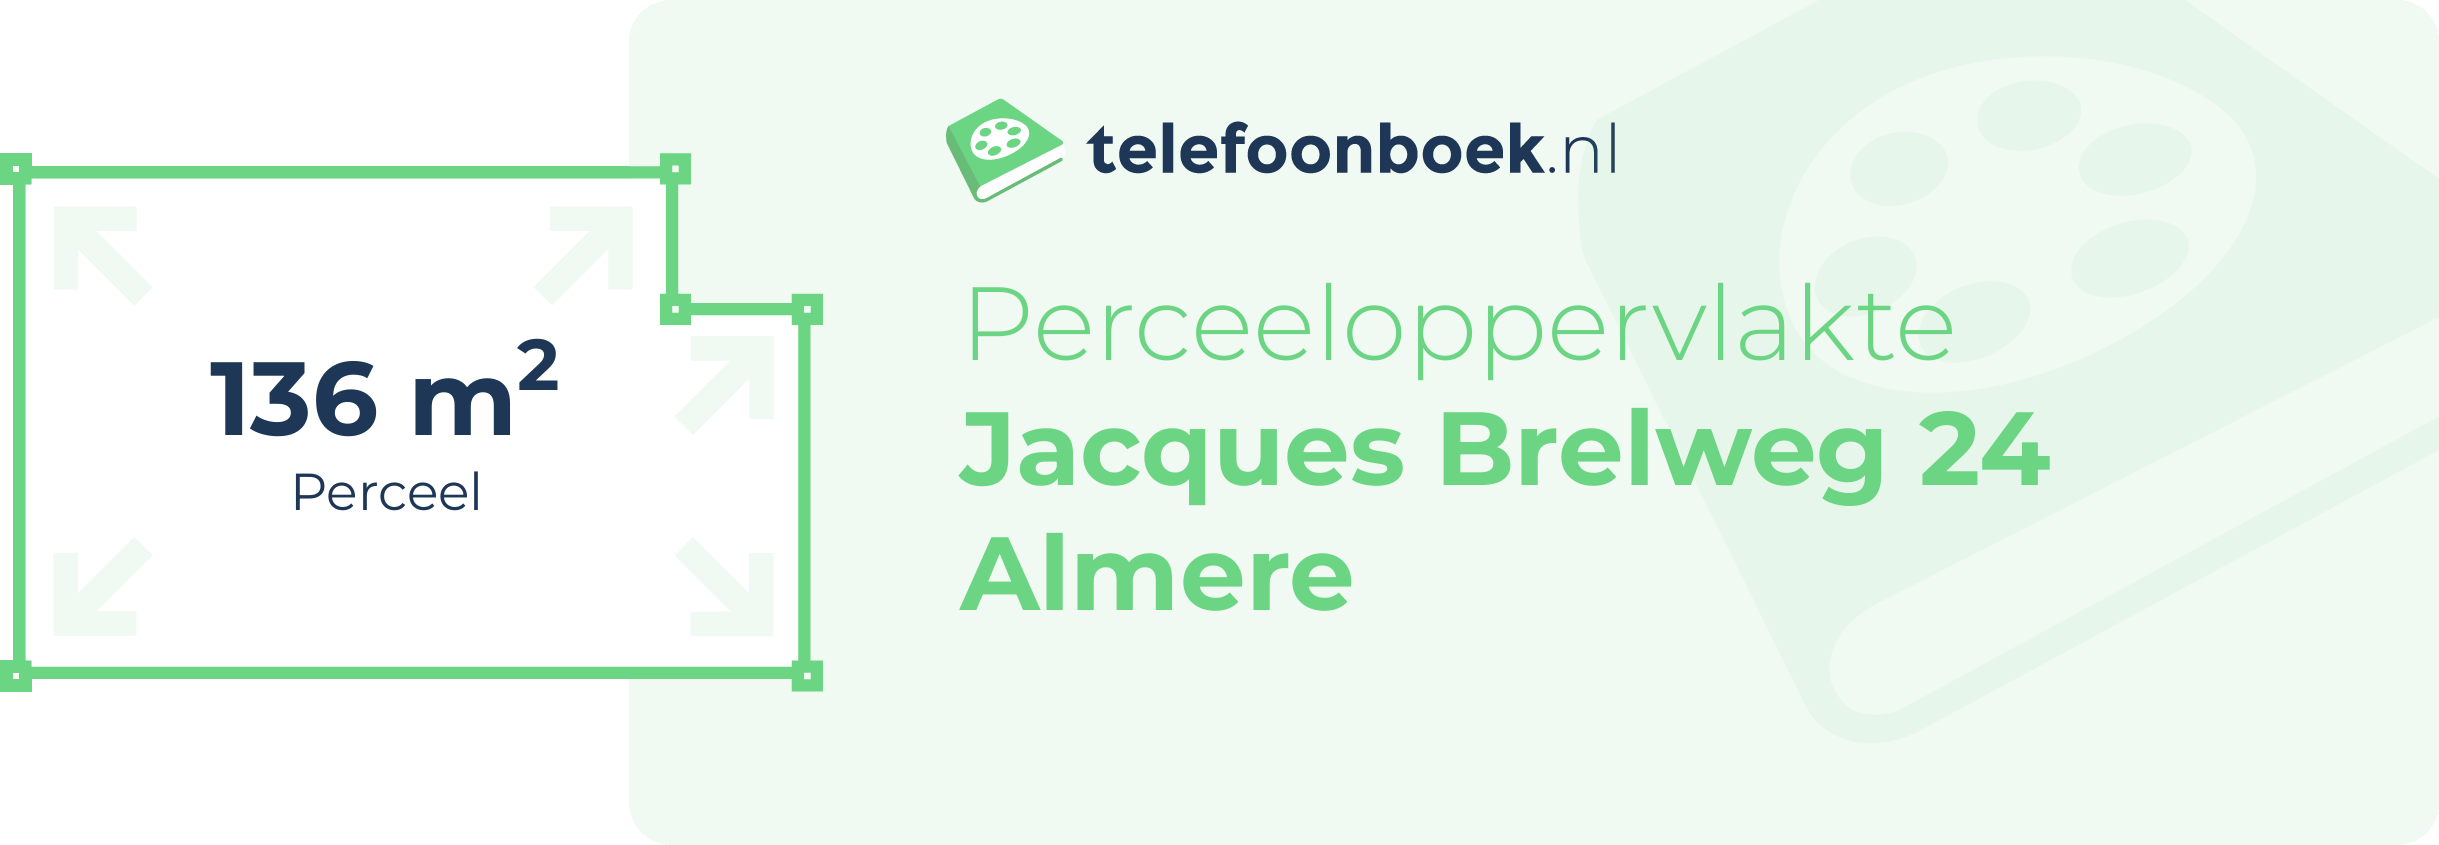 Perceeloppervlakte Jacques Brelweg 24 Almere